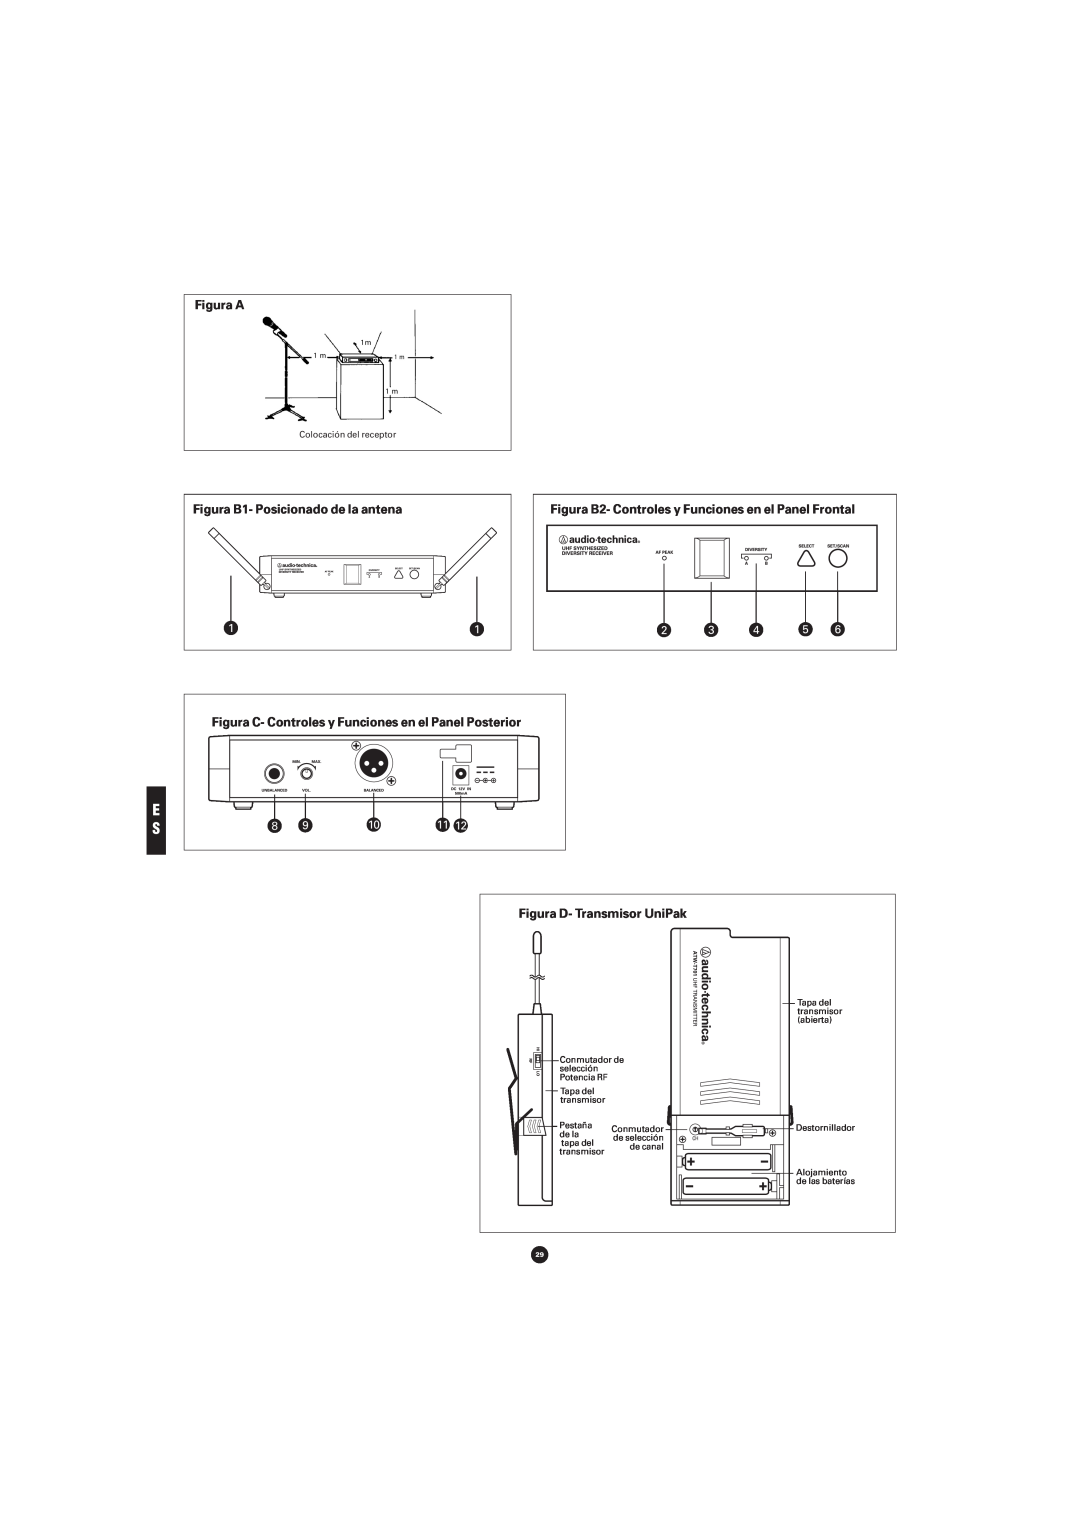 Audio-Technica ATW-701 manual Figura A, Figura B2- Controles y Funciones en el Panel Frontal, Figura D- Transmisor UniPak 